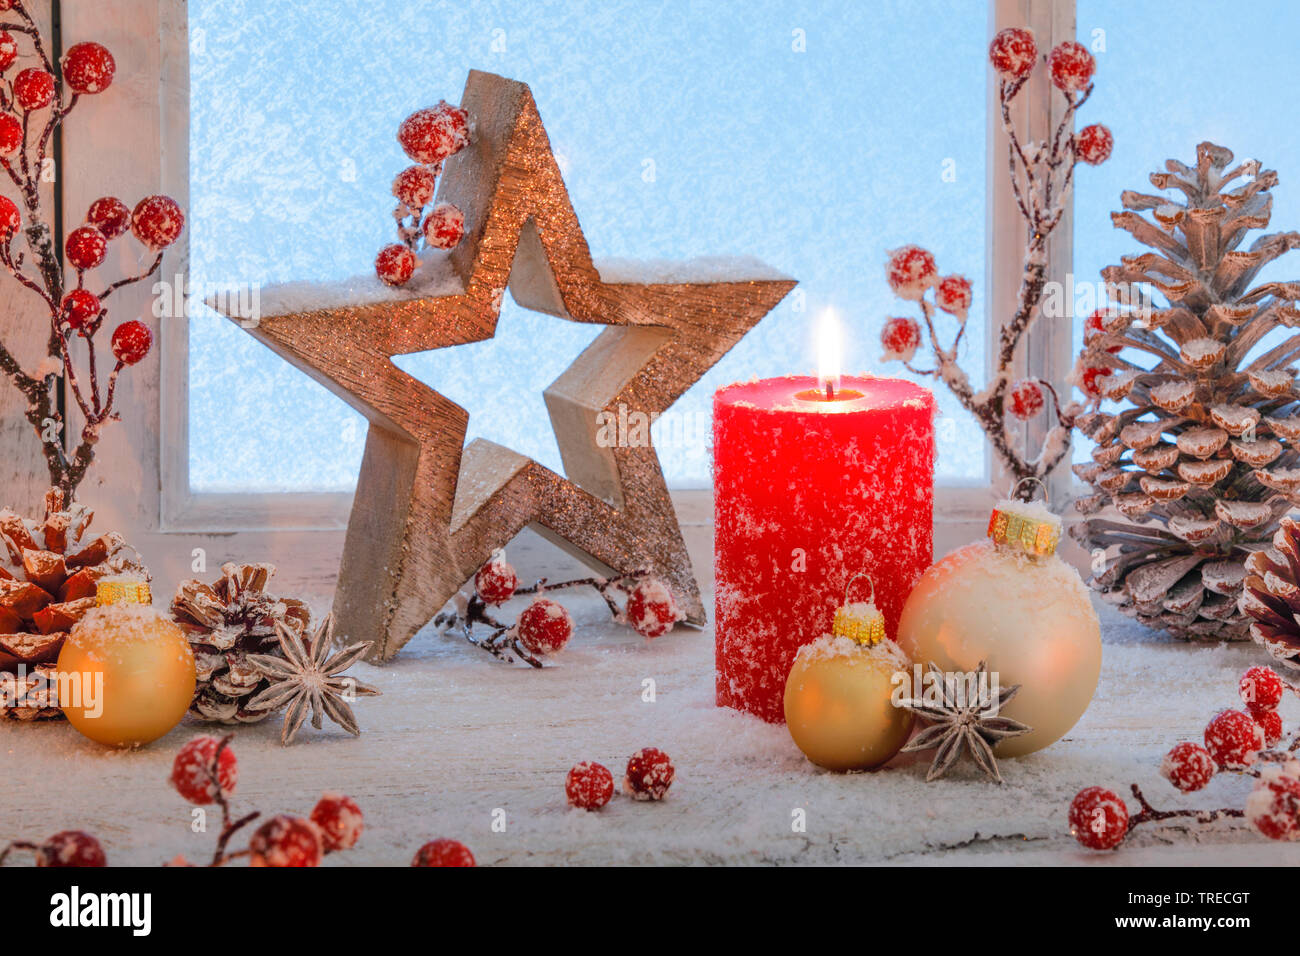 Décoration de Noël sur un rebord, Suisse Banque D'Images